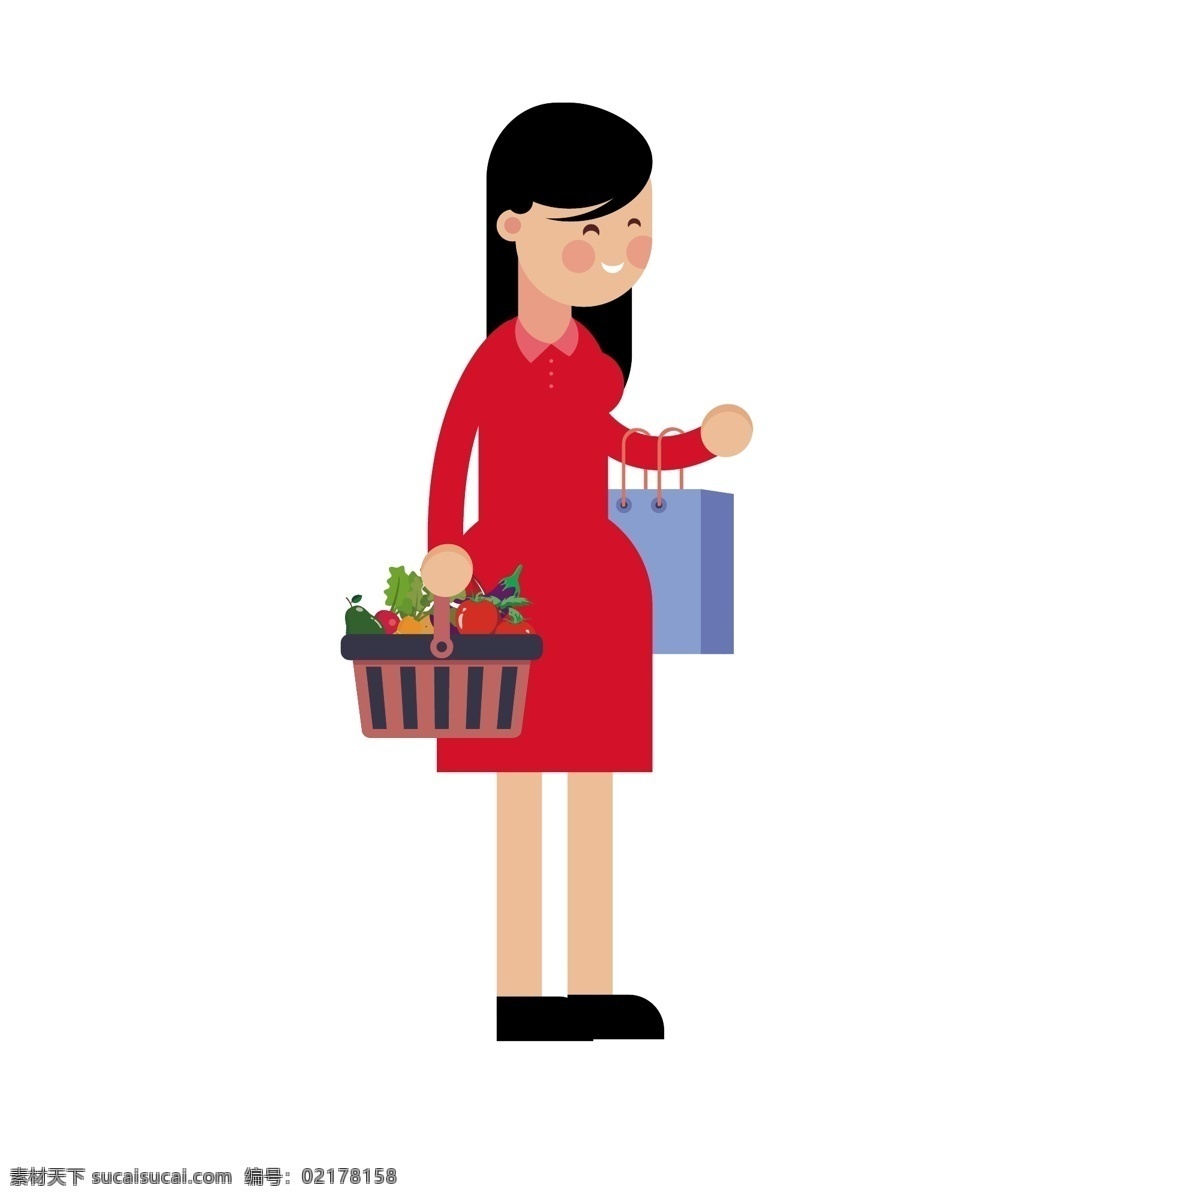 买 菜 回来 人 矢量 免 抠 图 卡通的 手绘的 人物 买菜的人 买菜回来 去菜市场 家庭主妇 保姆 女人 穿红裙子的人